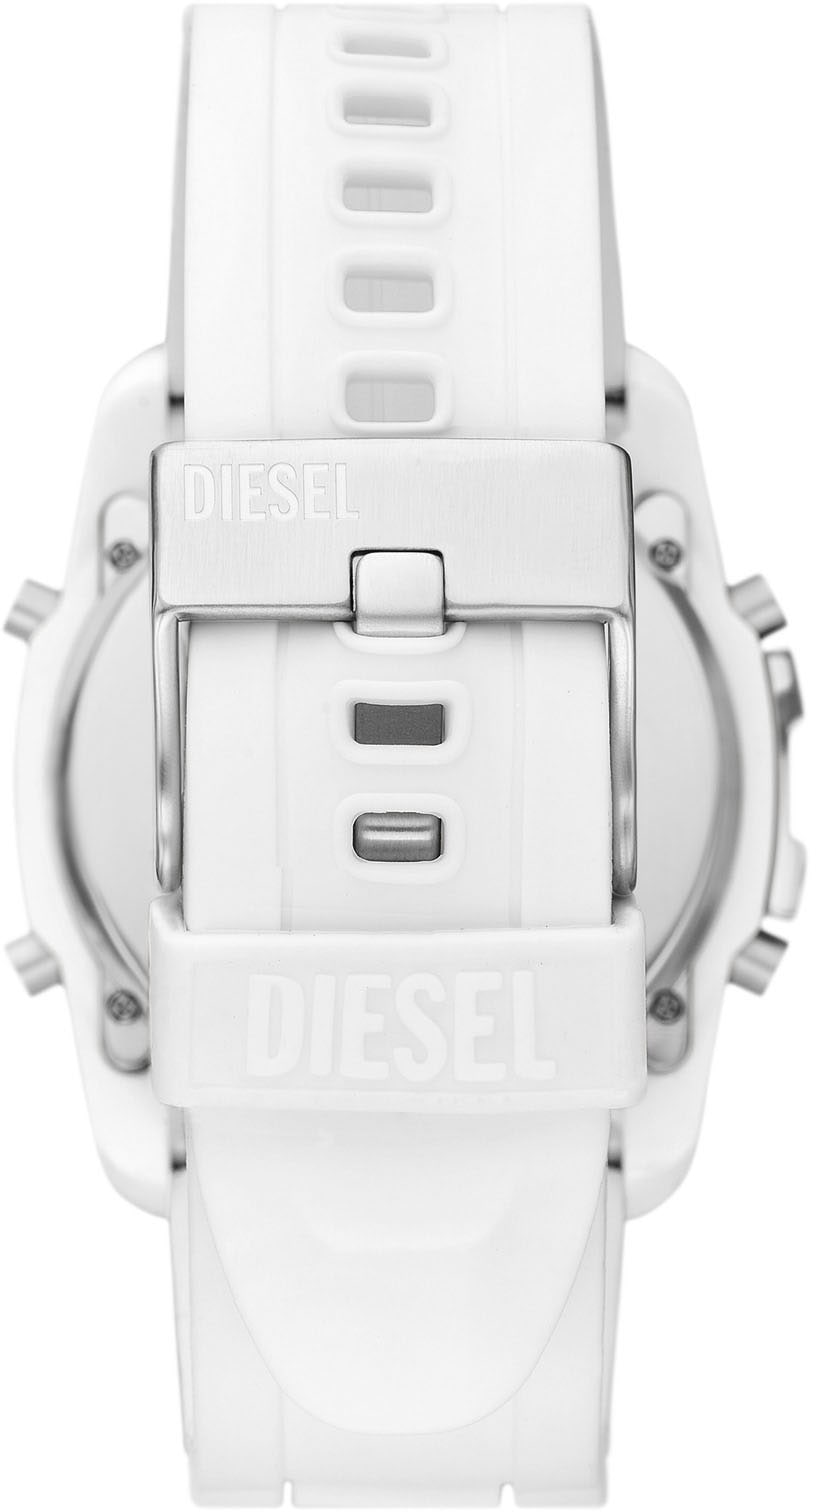 Diesel Digitaluhr »MASTER CHIEF, DZ2157« ▷ kaufen | BAUR